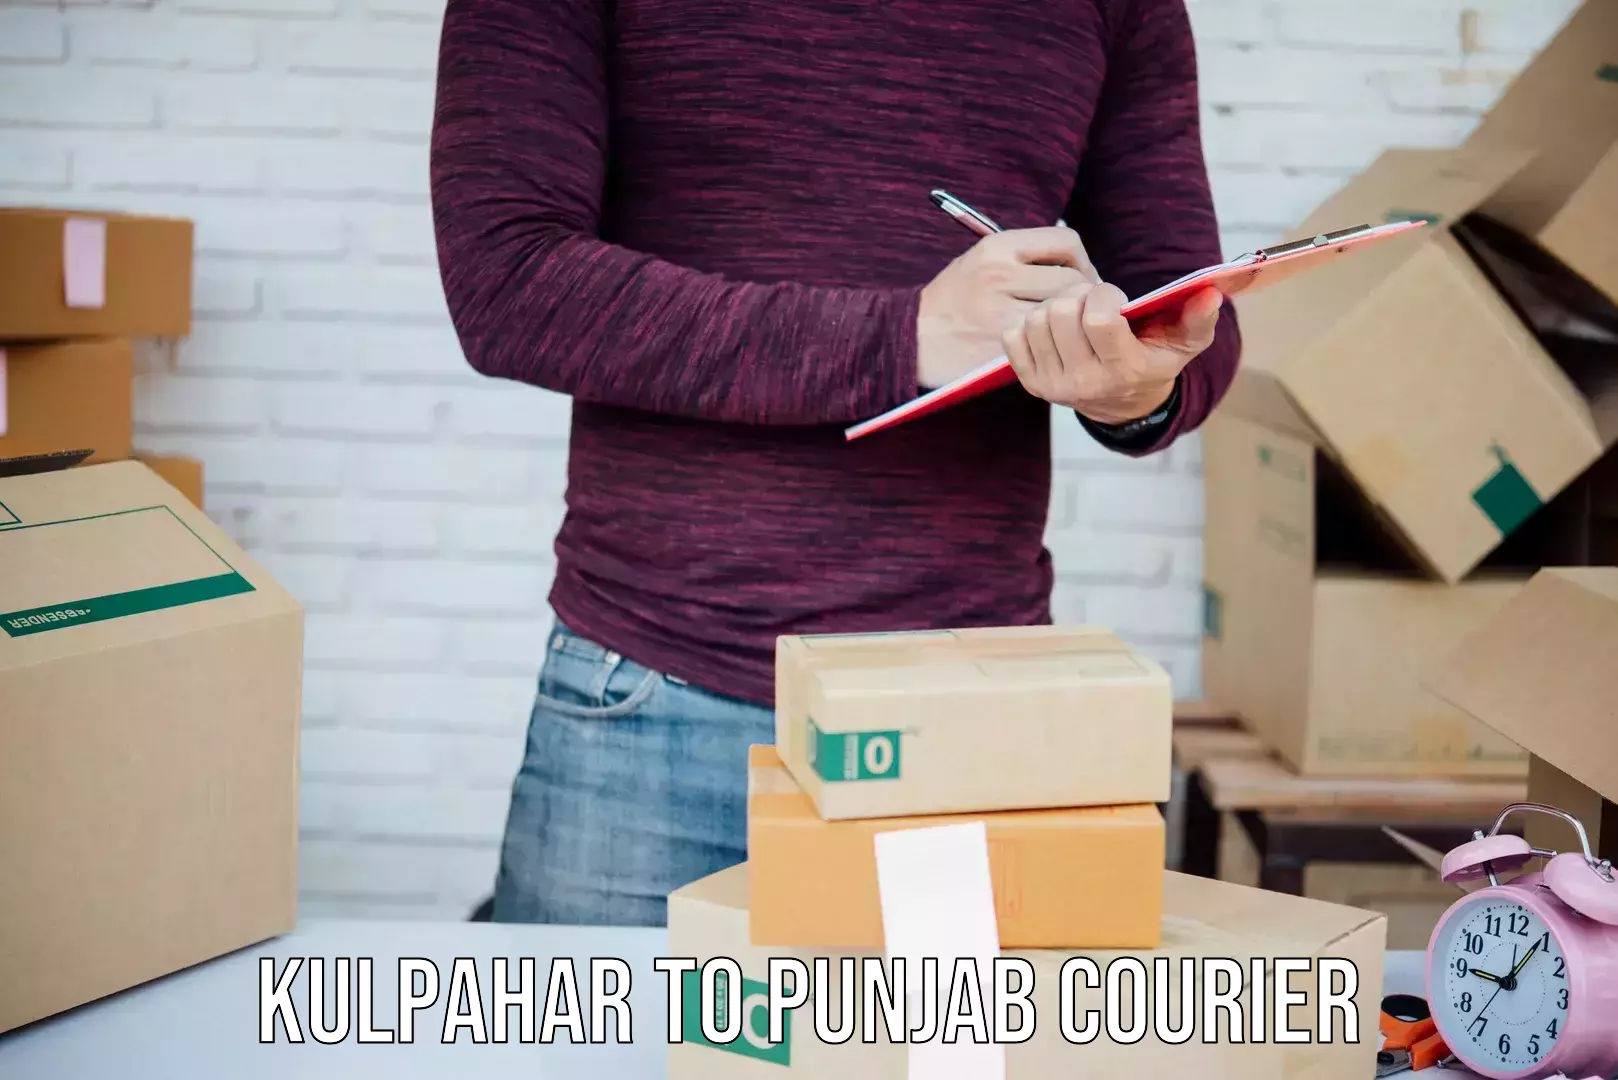 Weekend courier service Kulpahar to Firozpur